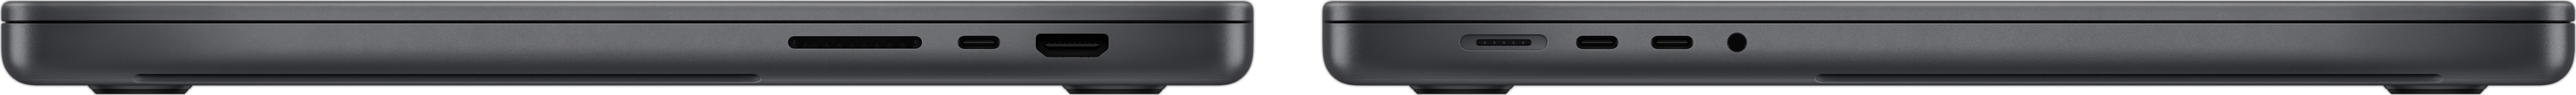 MacBook Pro sānu skatā ir redzams SDXC kartes slots, trīs Thunderbolt 4 porti, HDMI ports, MagSafe 3 uzlādes ports un austiņu ligzda.